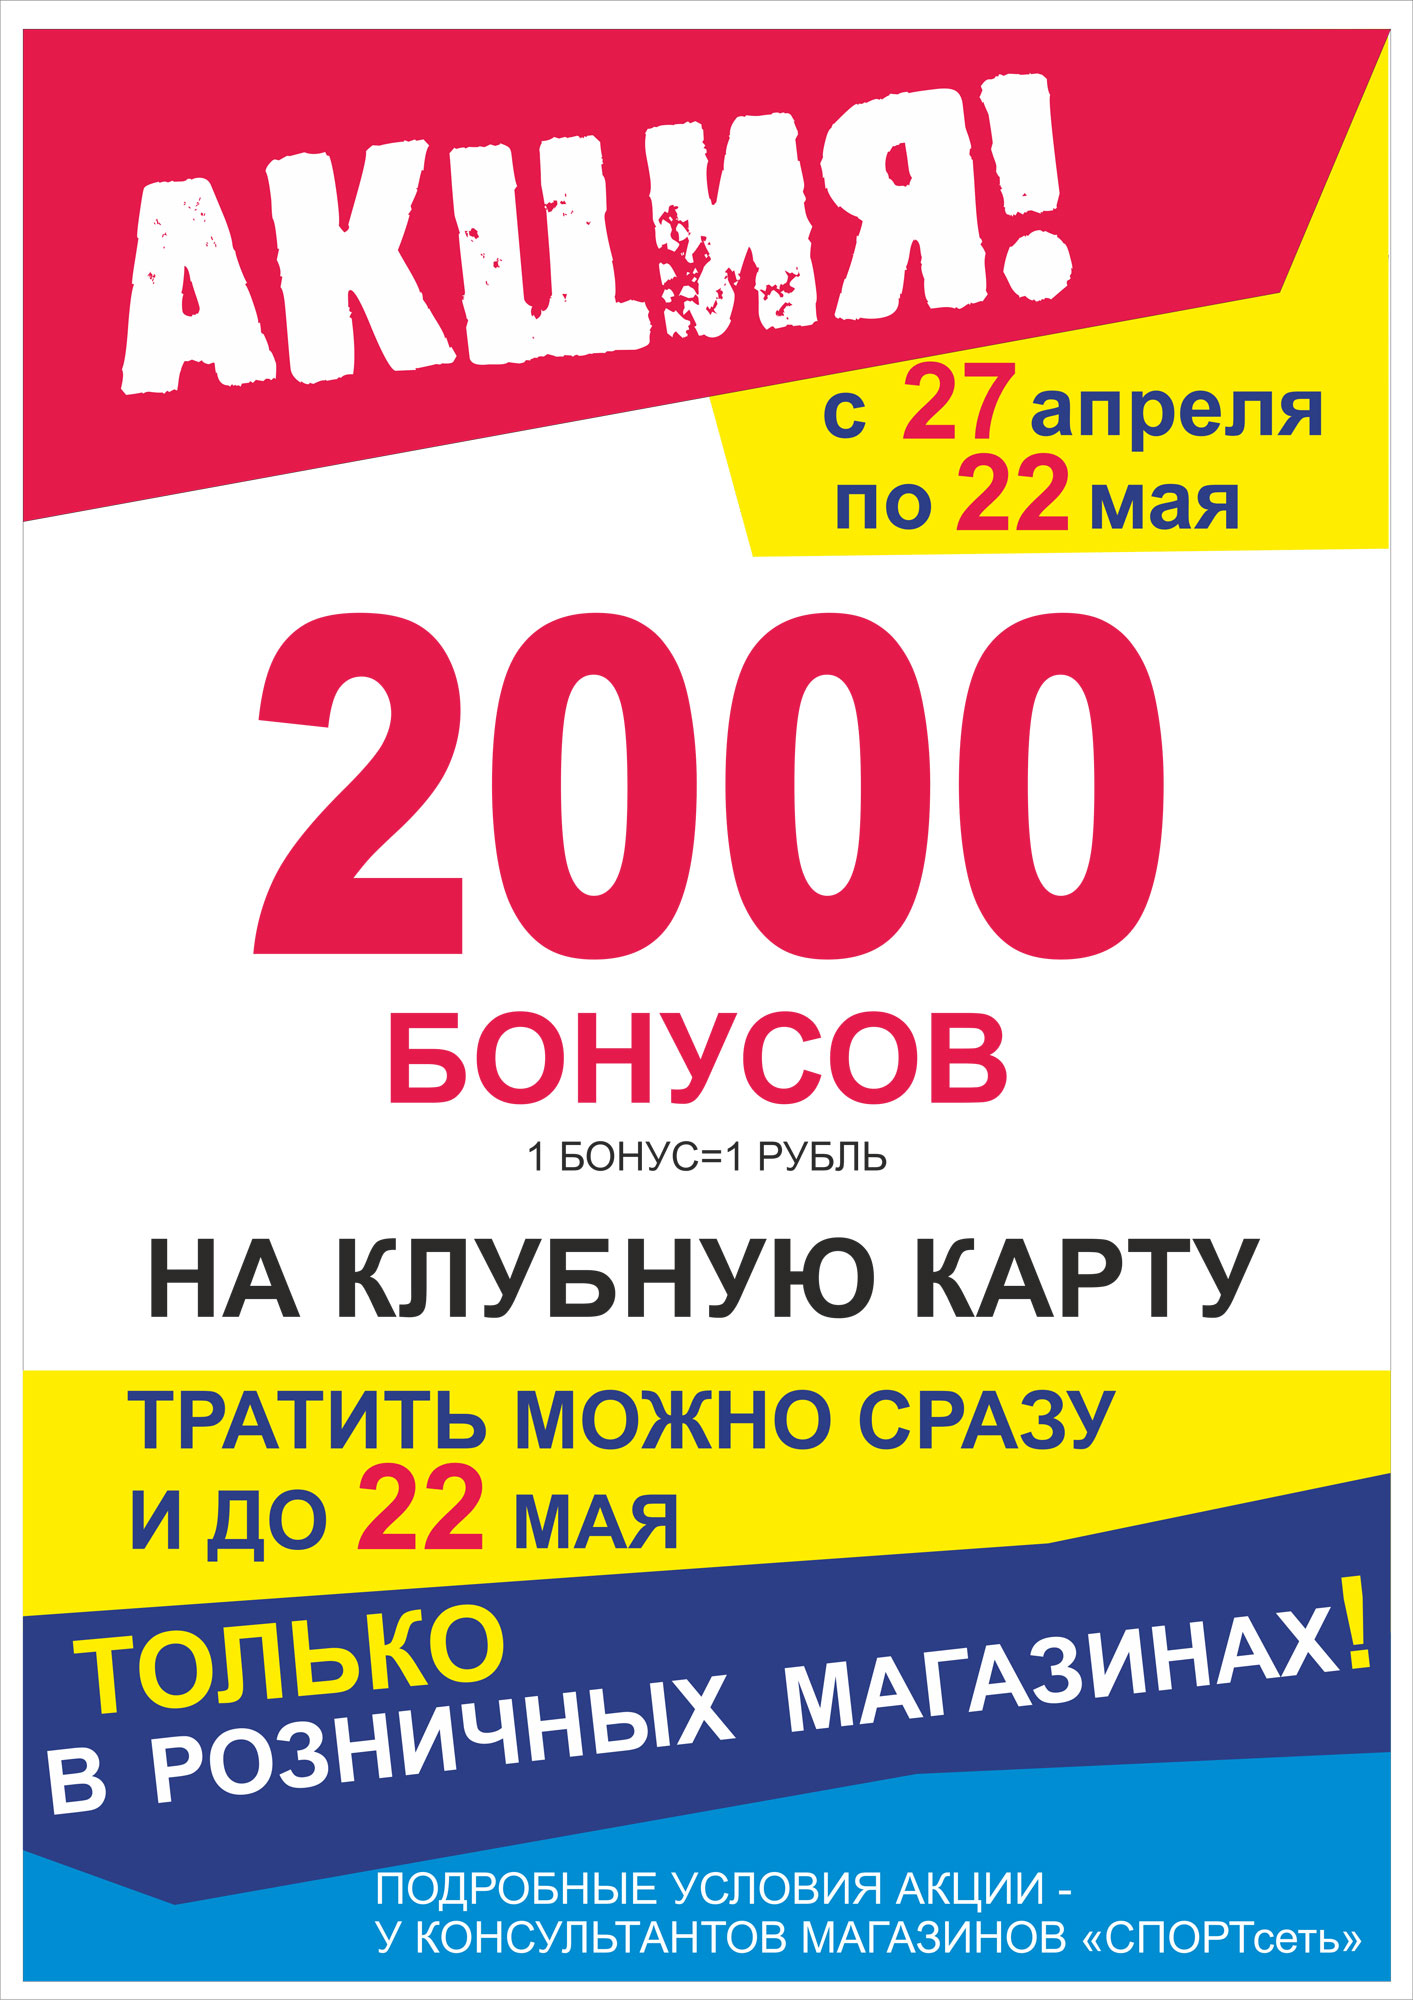 2000 бонусов в ПОДАРОК